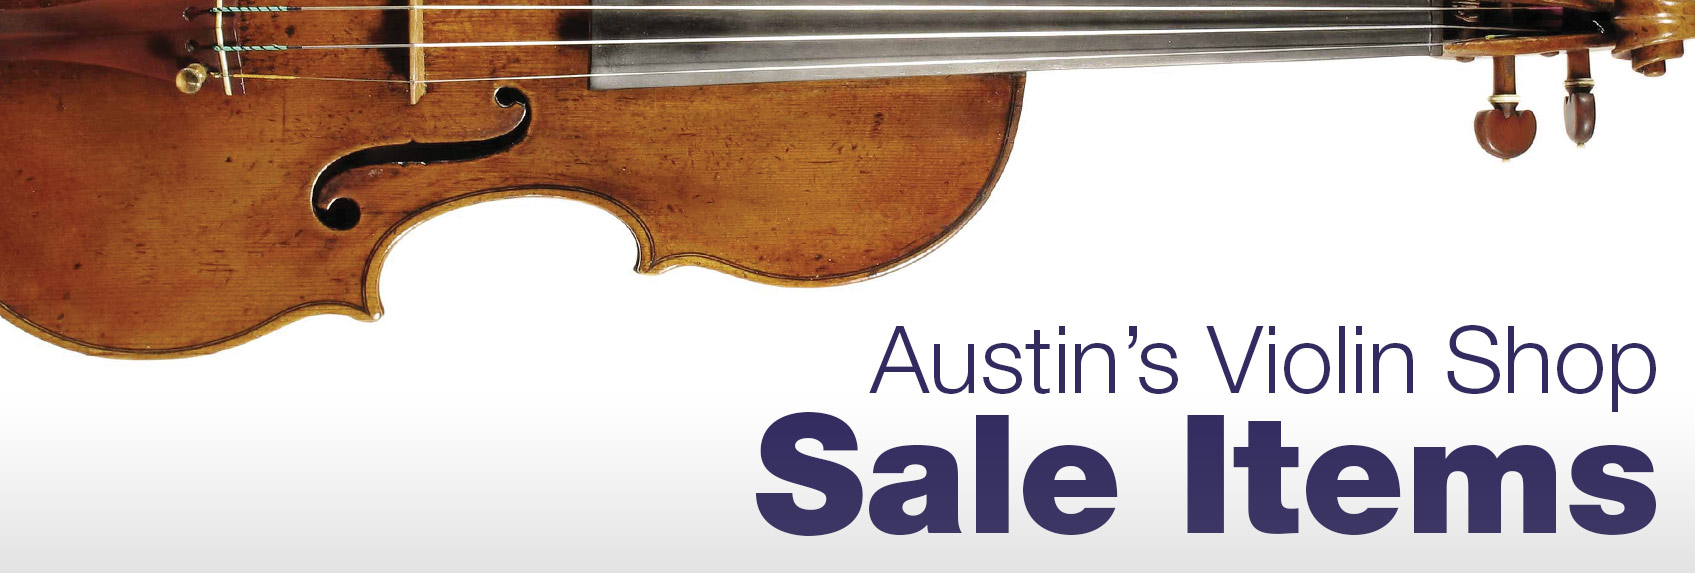 Sale Items Austins Violin Shop